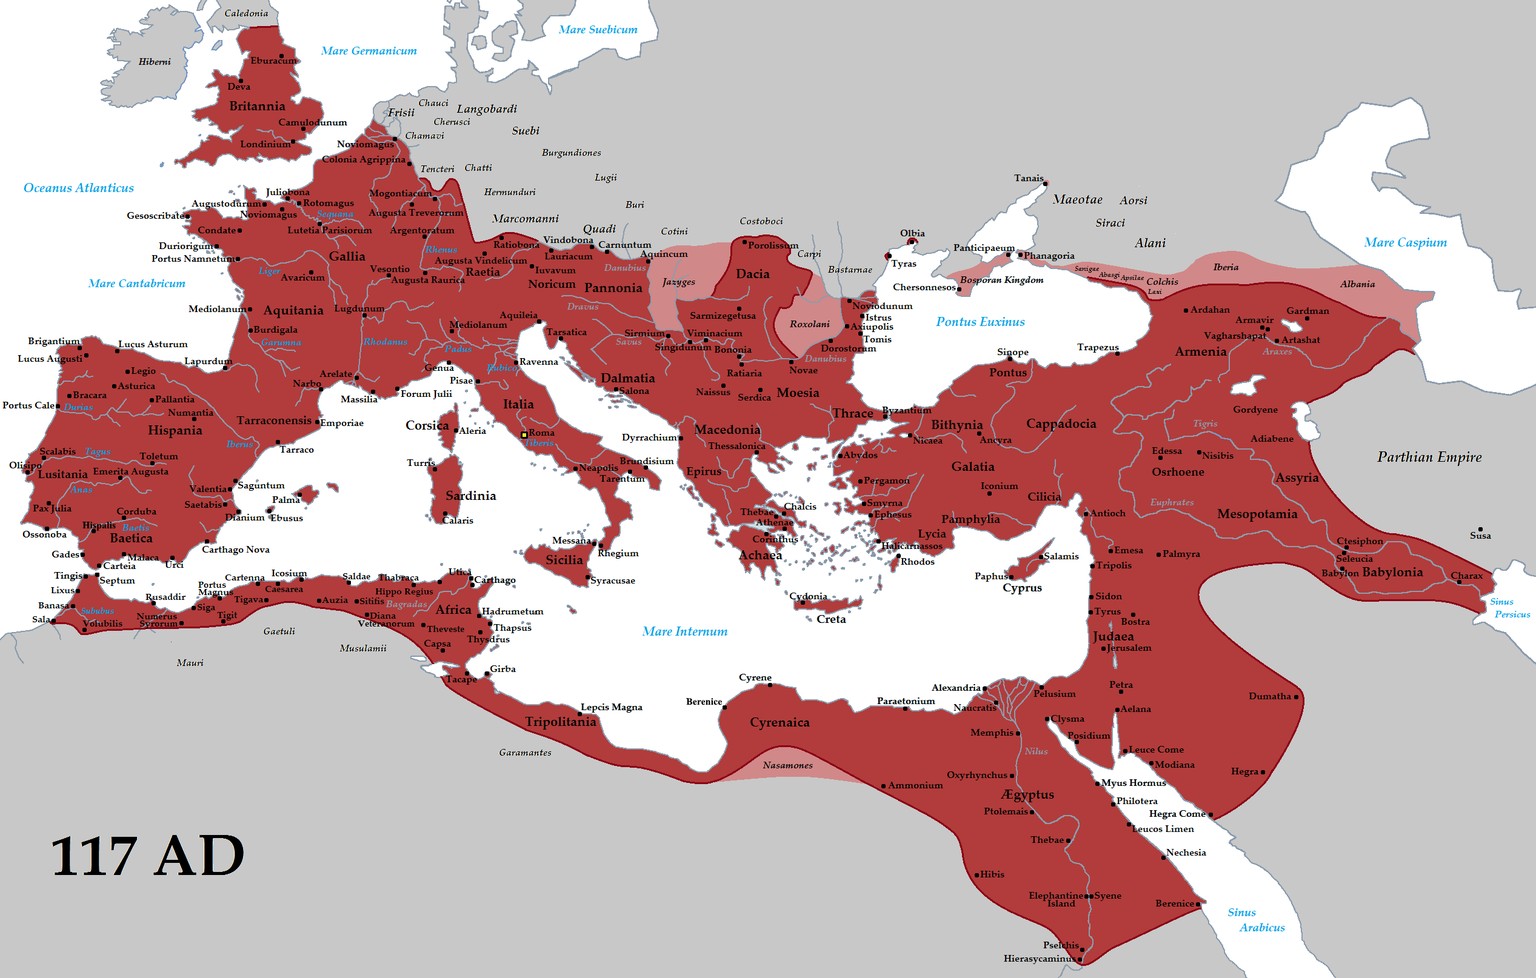 Das Römische Reich in seiner größten Ausdehnung beim Tod Kaiser Trajans 117 n. Chr. Die Provinzen Armenia, Assyria und Mesopotamia standen allerdings nur wenige Jahre unter römischer Kontrolle.